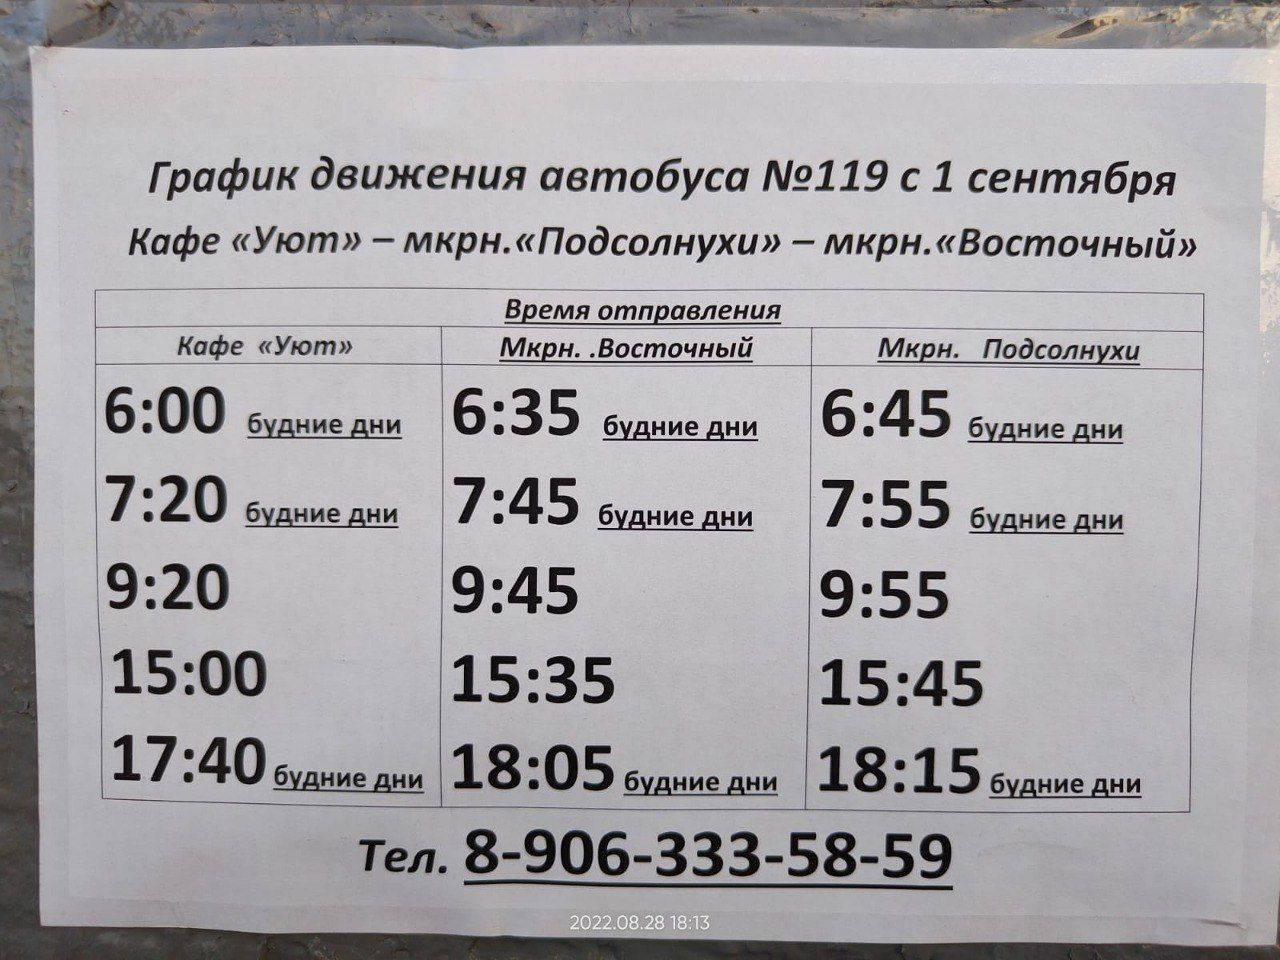 Расписание 119 автобуса